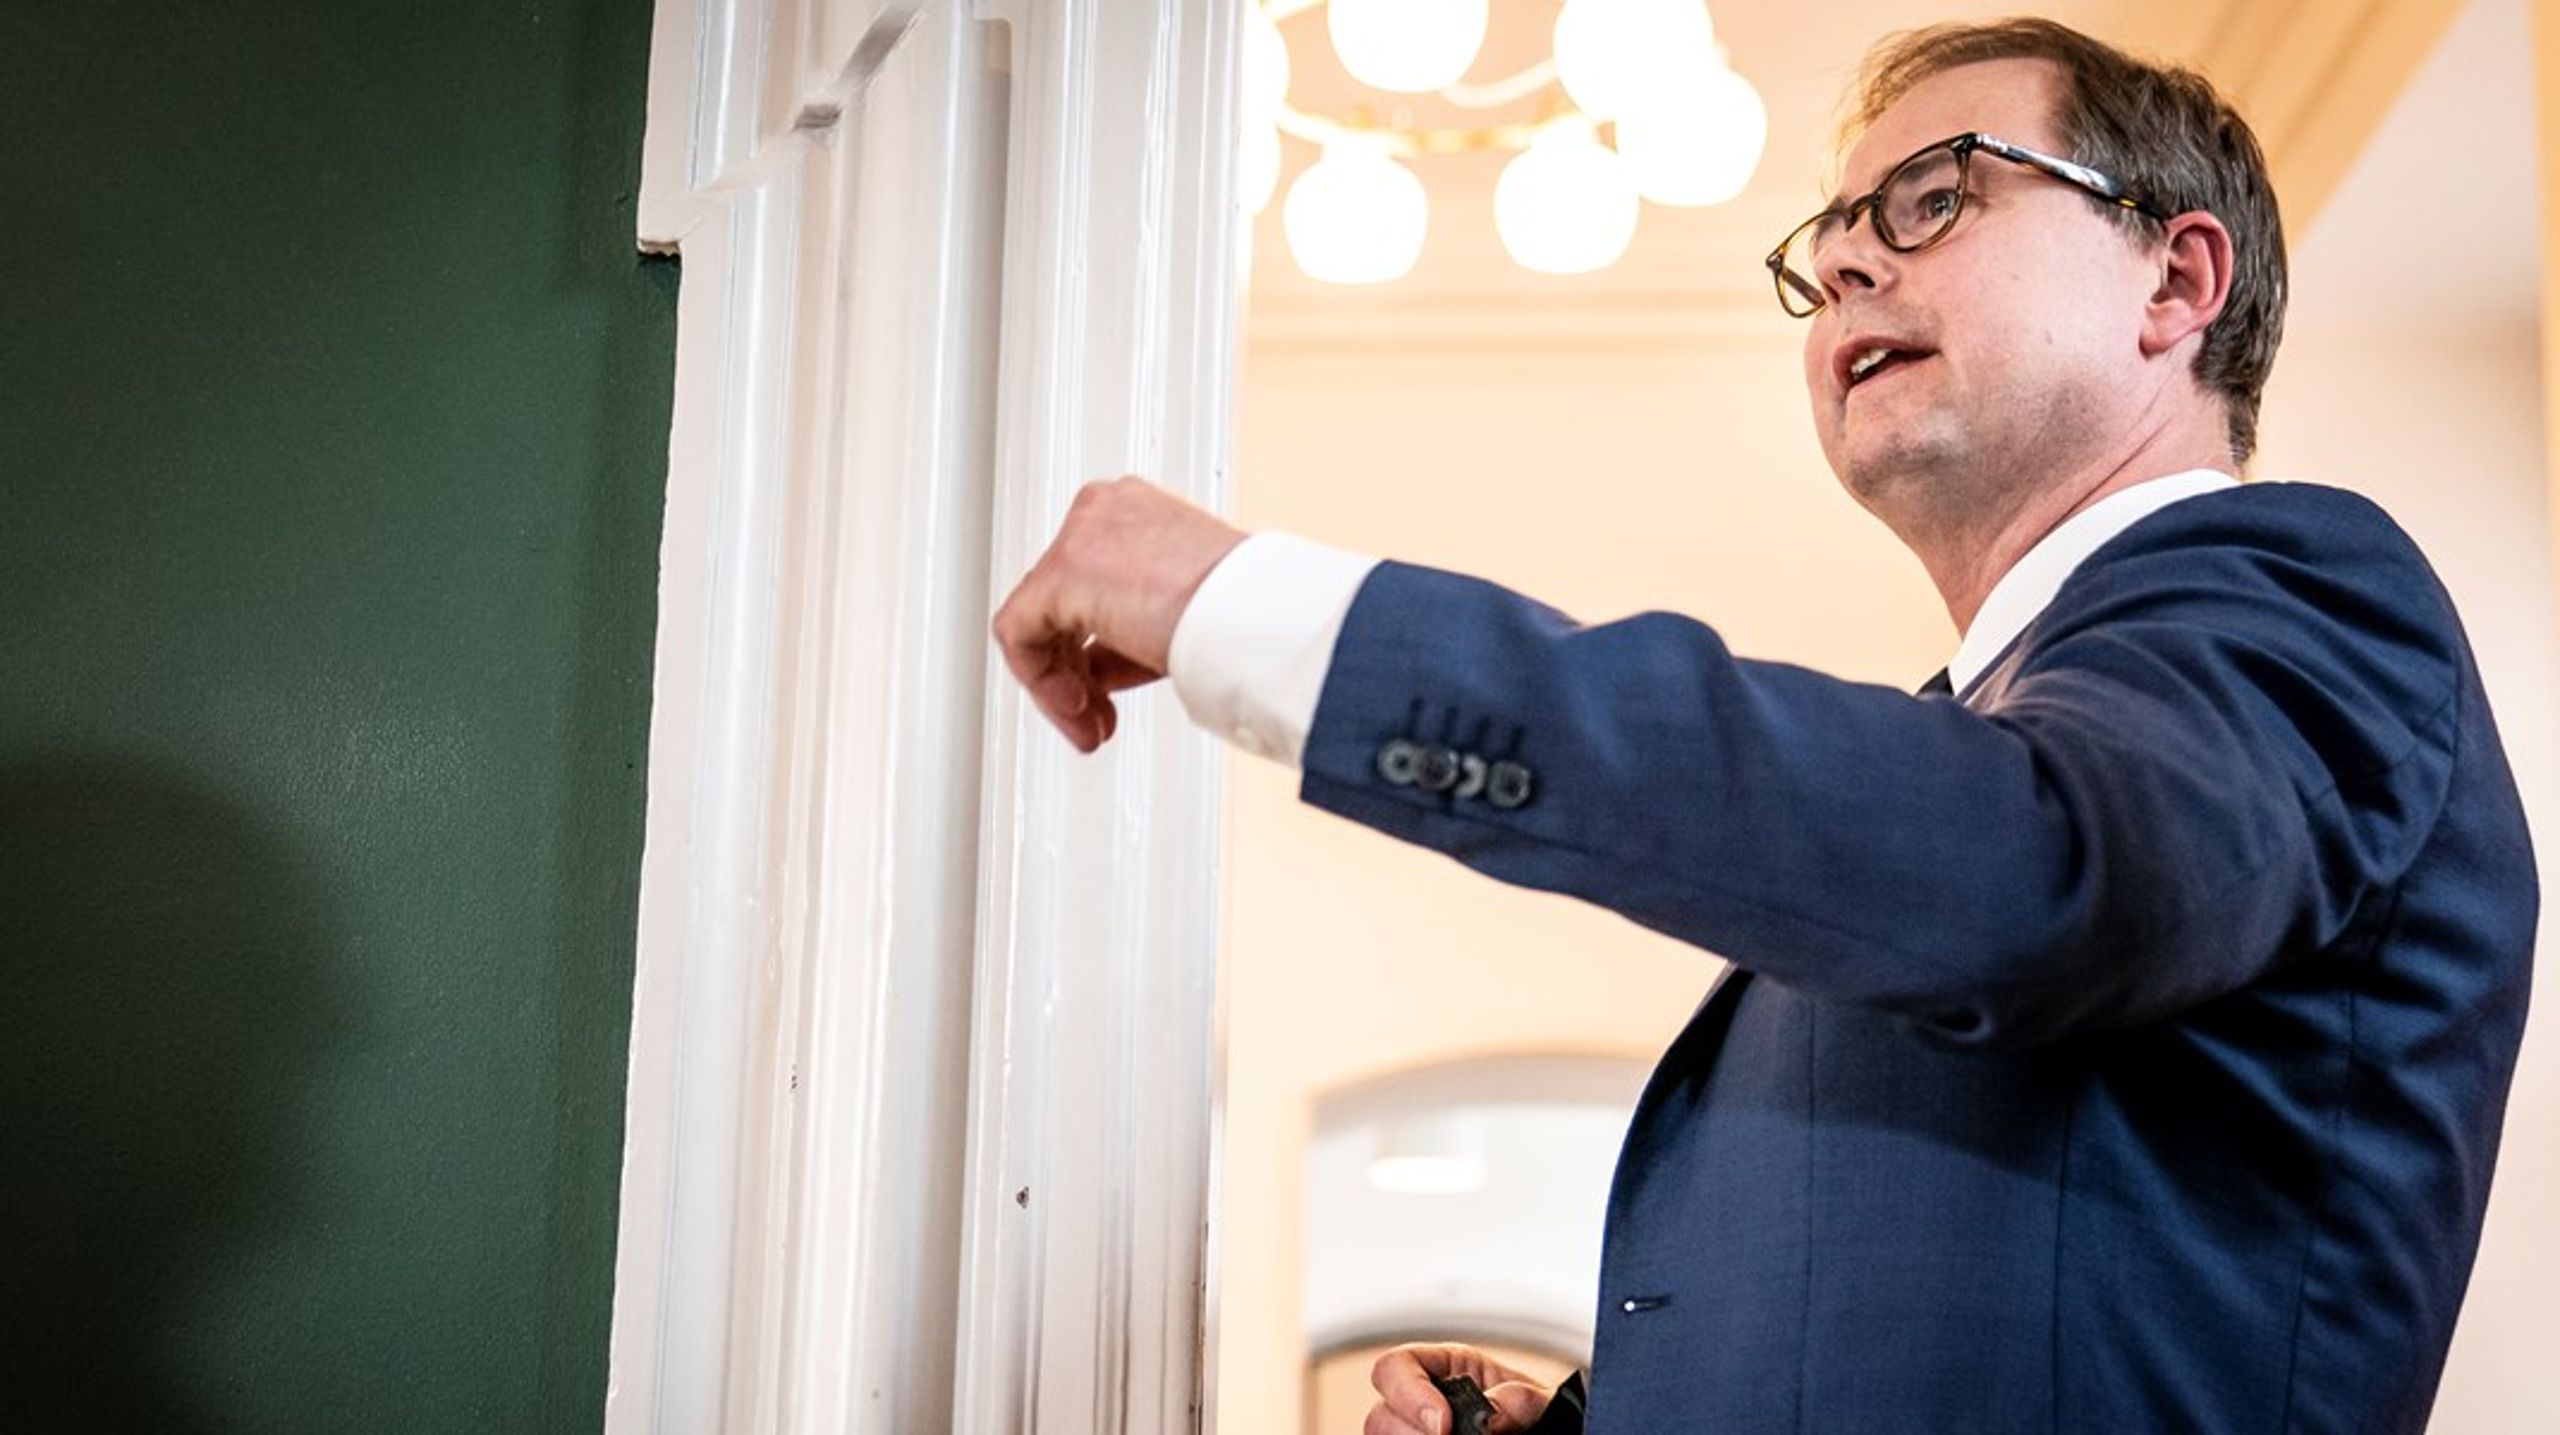 Et folketingssvar fra finansminister Nicolai Wammen (S) afslører, at Økonomistyrelsen har forsøgt at boykotte Vagtservice Danmark "på grund af unormalt lave priser".